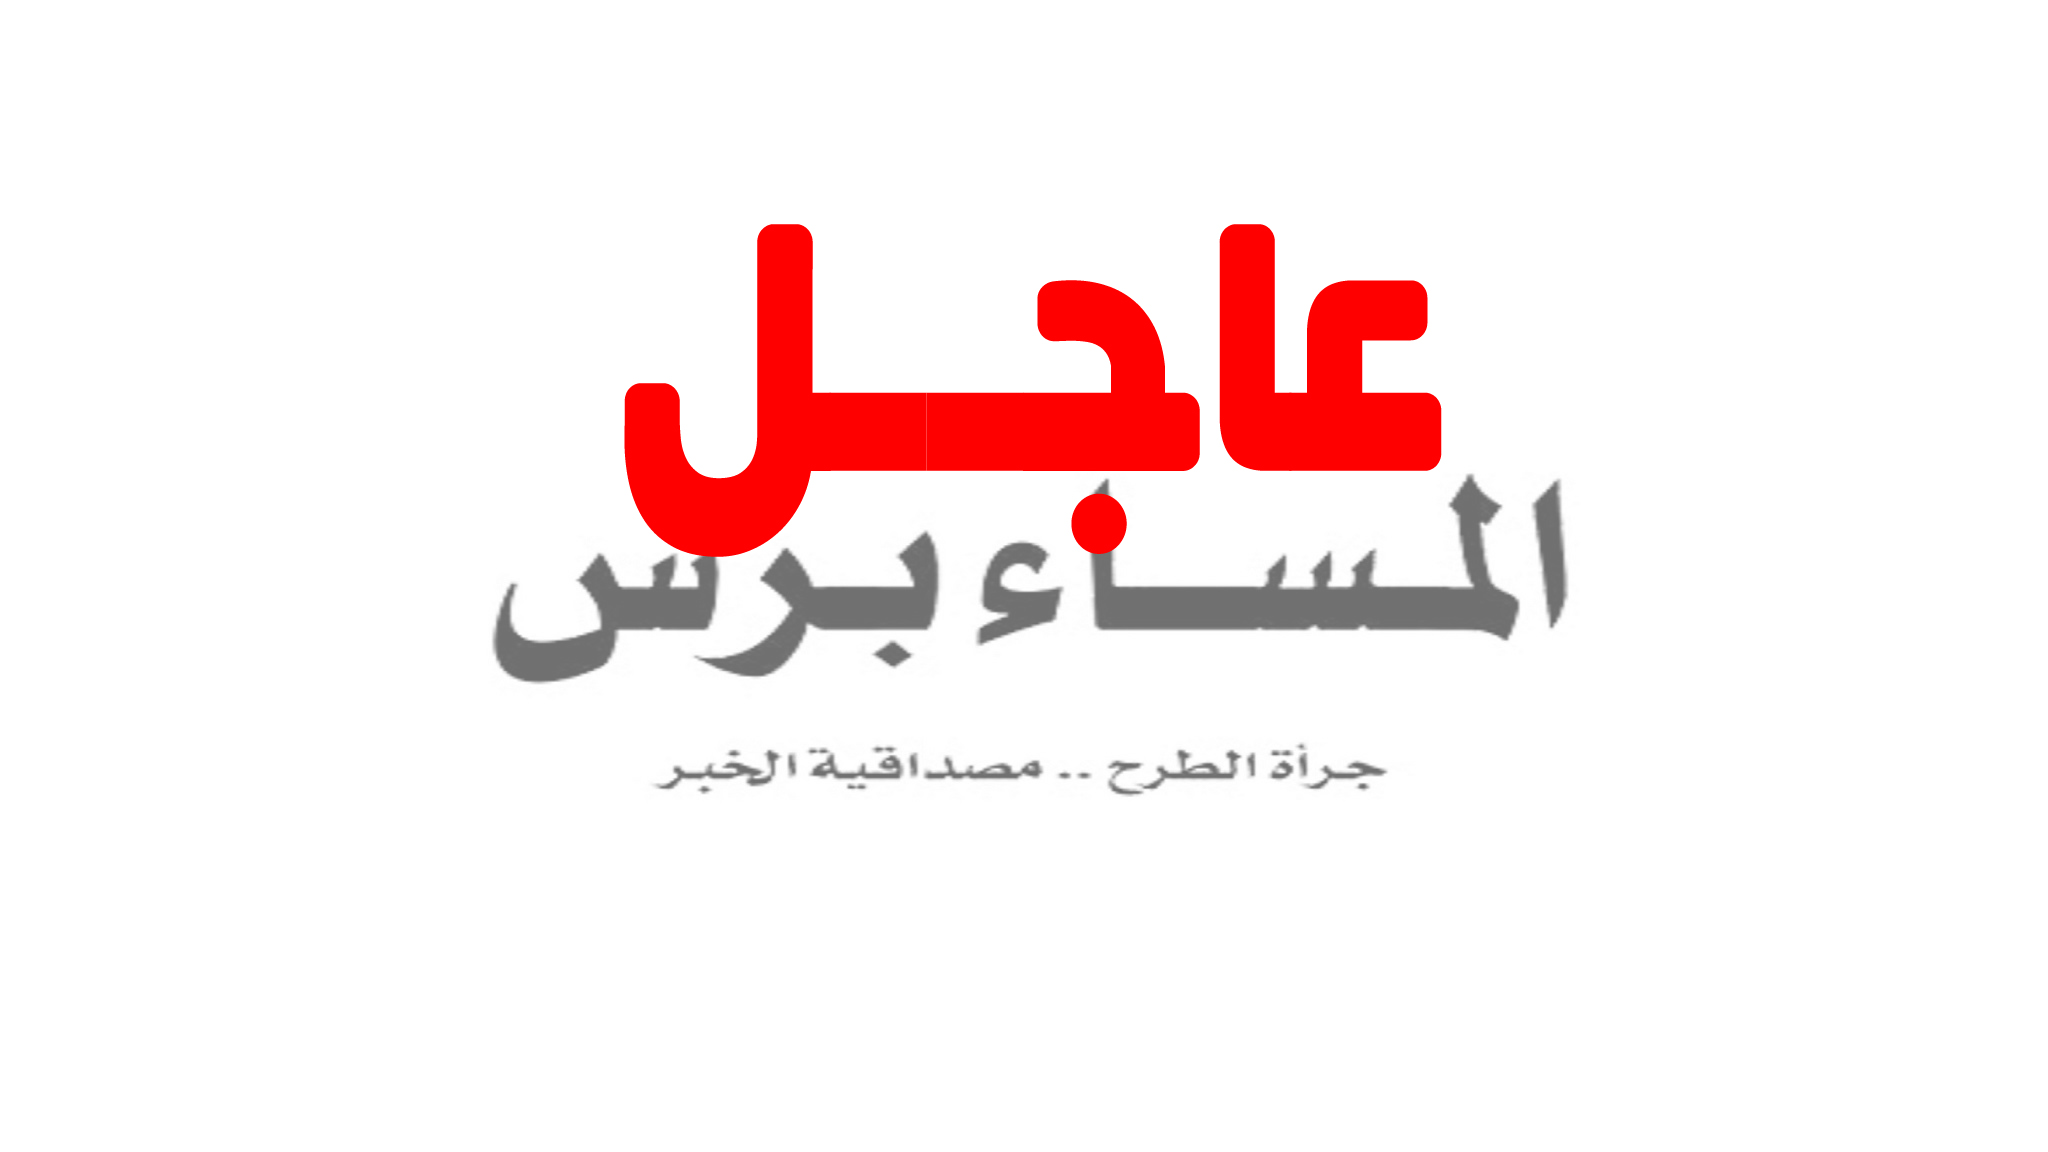 أنباء عن قصف طيران التحالف لقوات إماراتية وسودانية